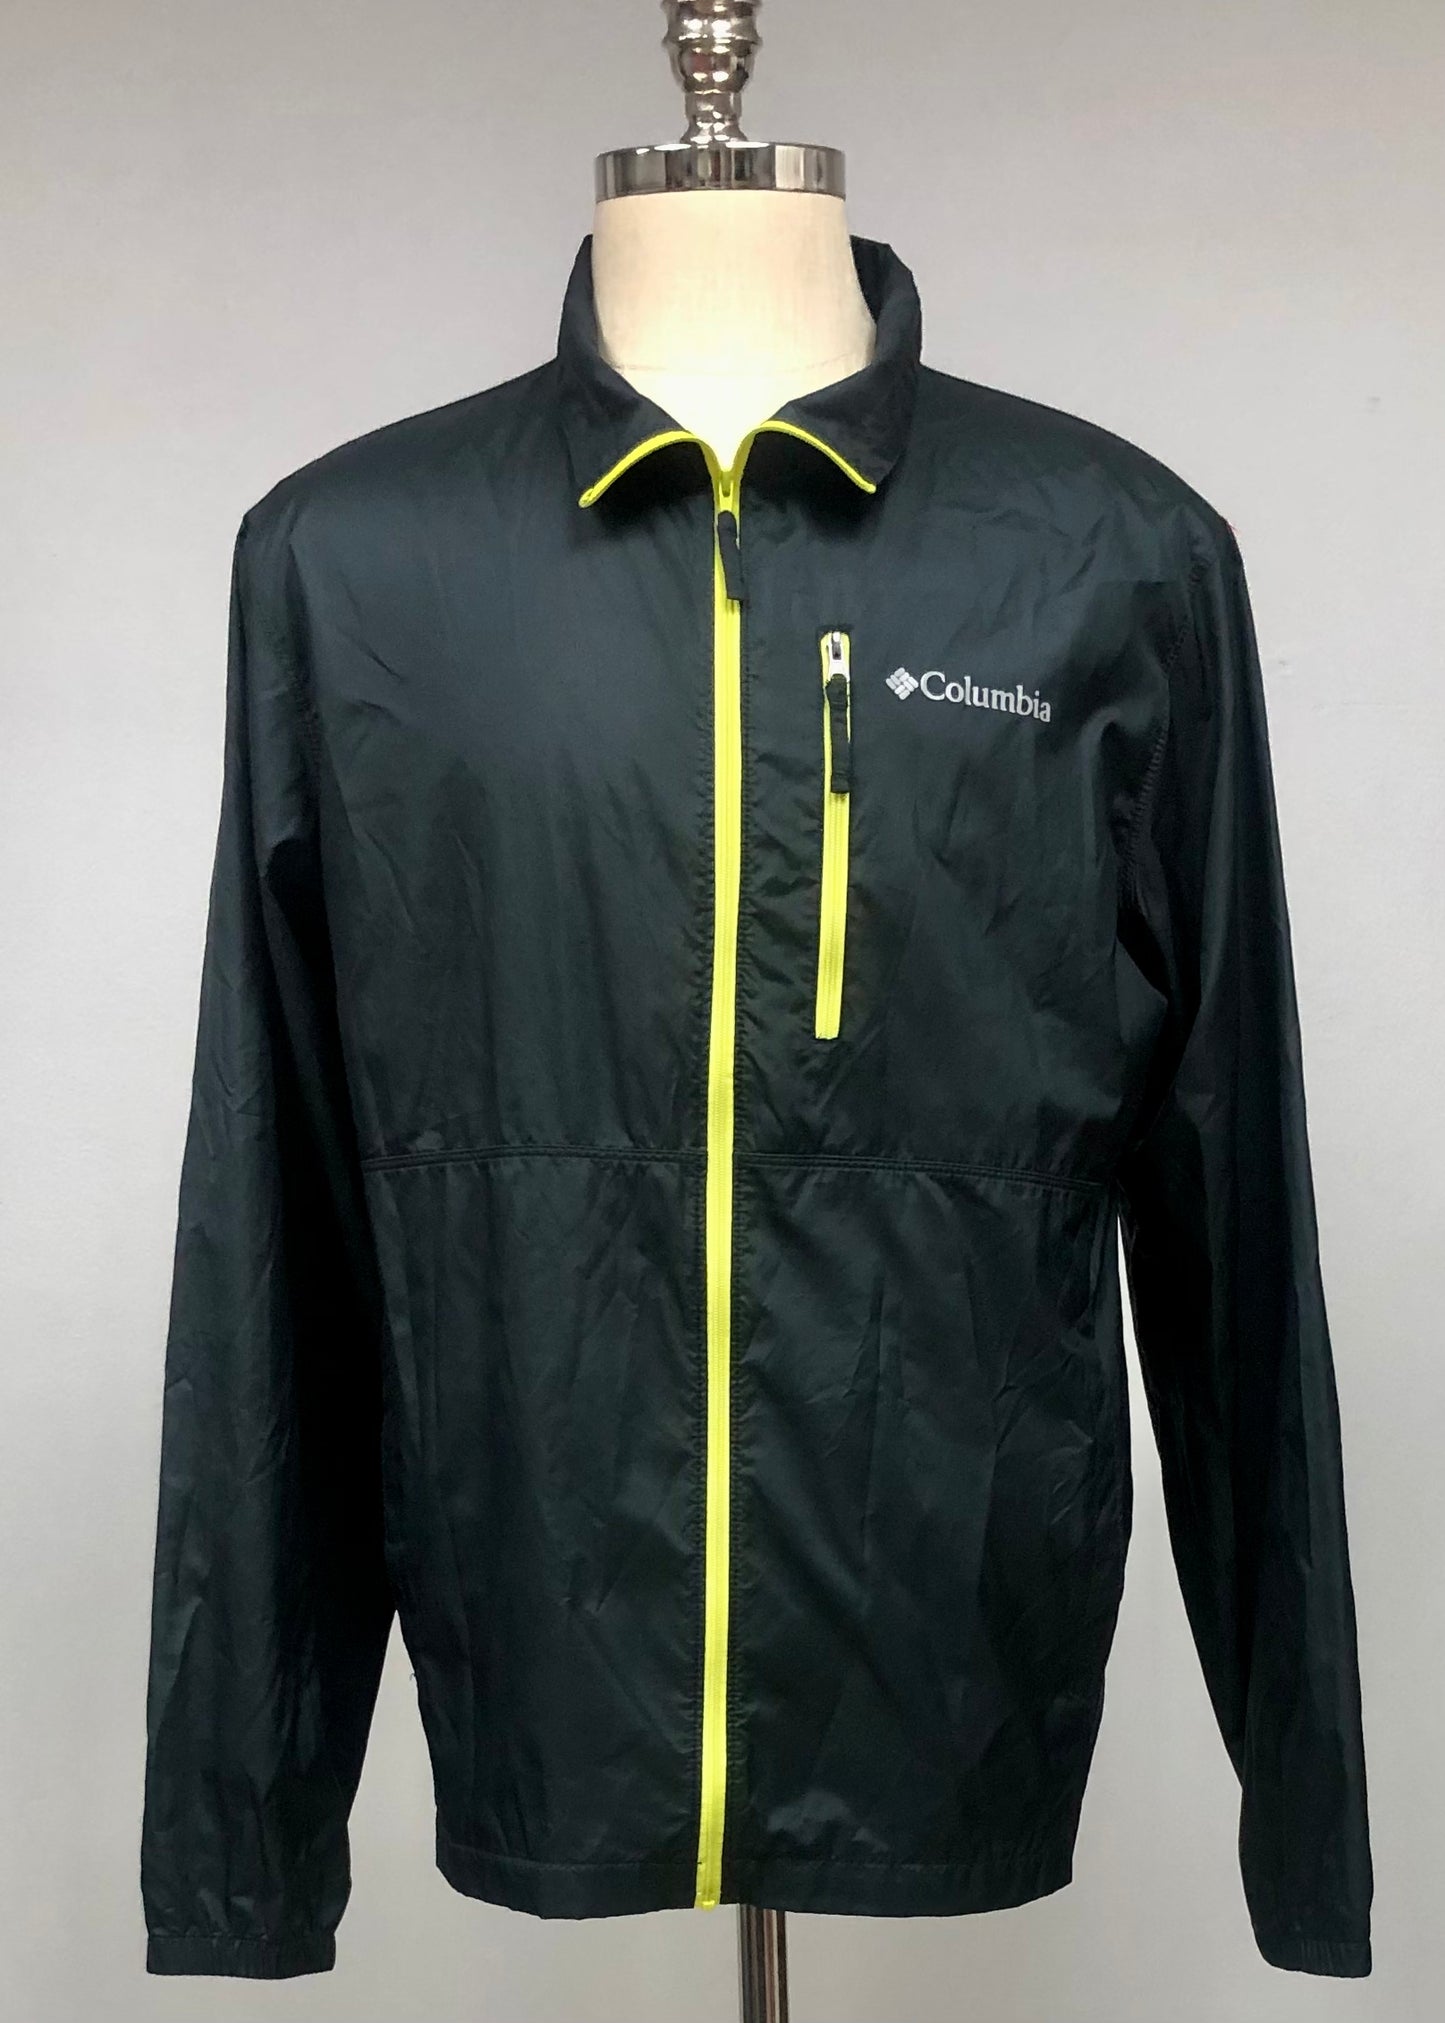 Jacket Columbia 🔷 color negro con zíper completo color amarillo y logo en color gris Talla M